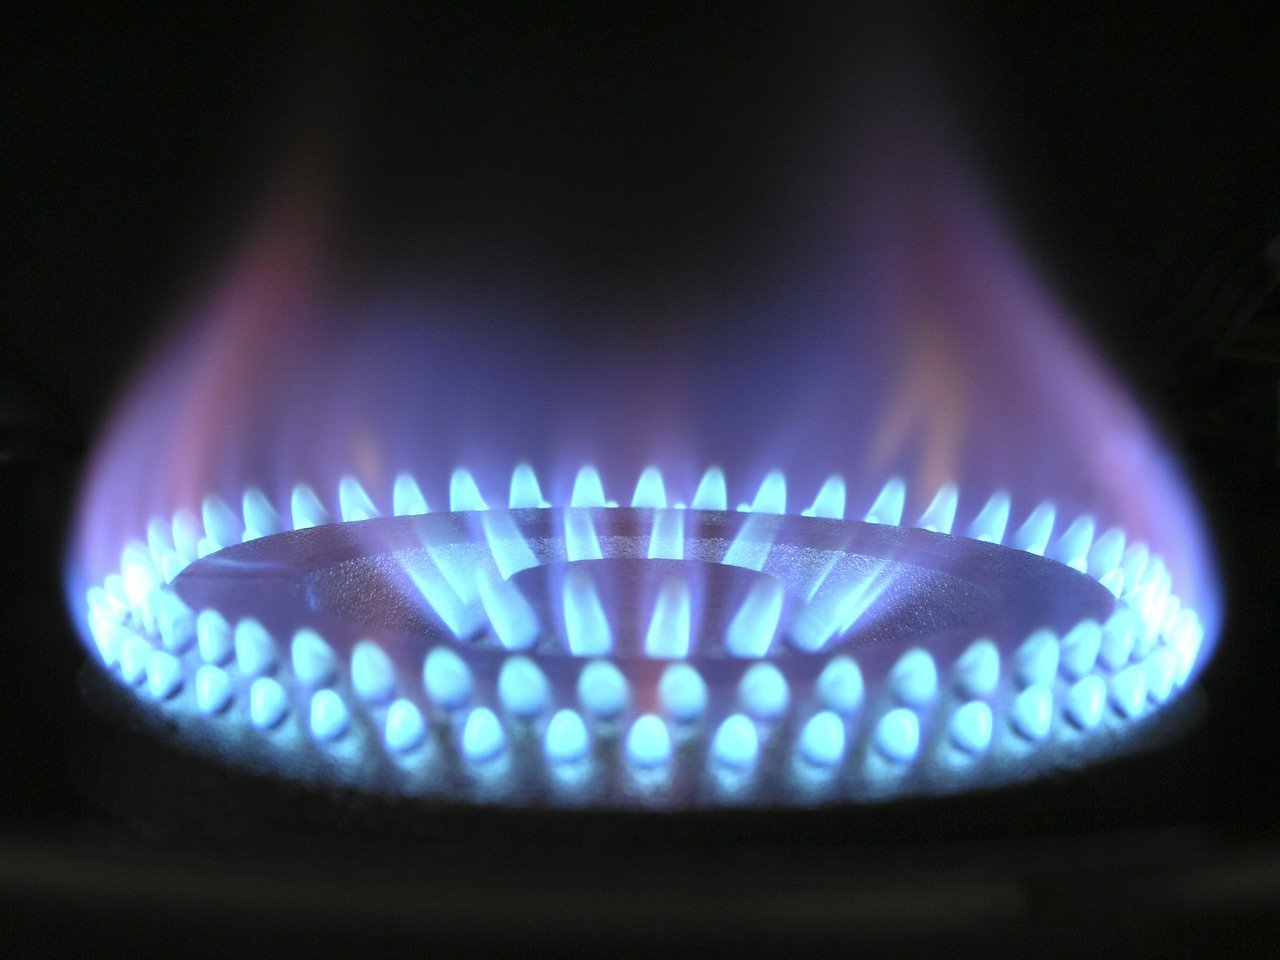 Gas Naturale, cede il colosso tedesco VNG: via libera alla conversione in rubli